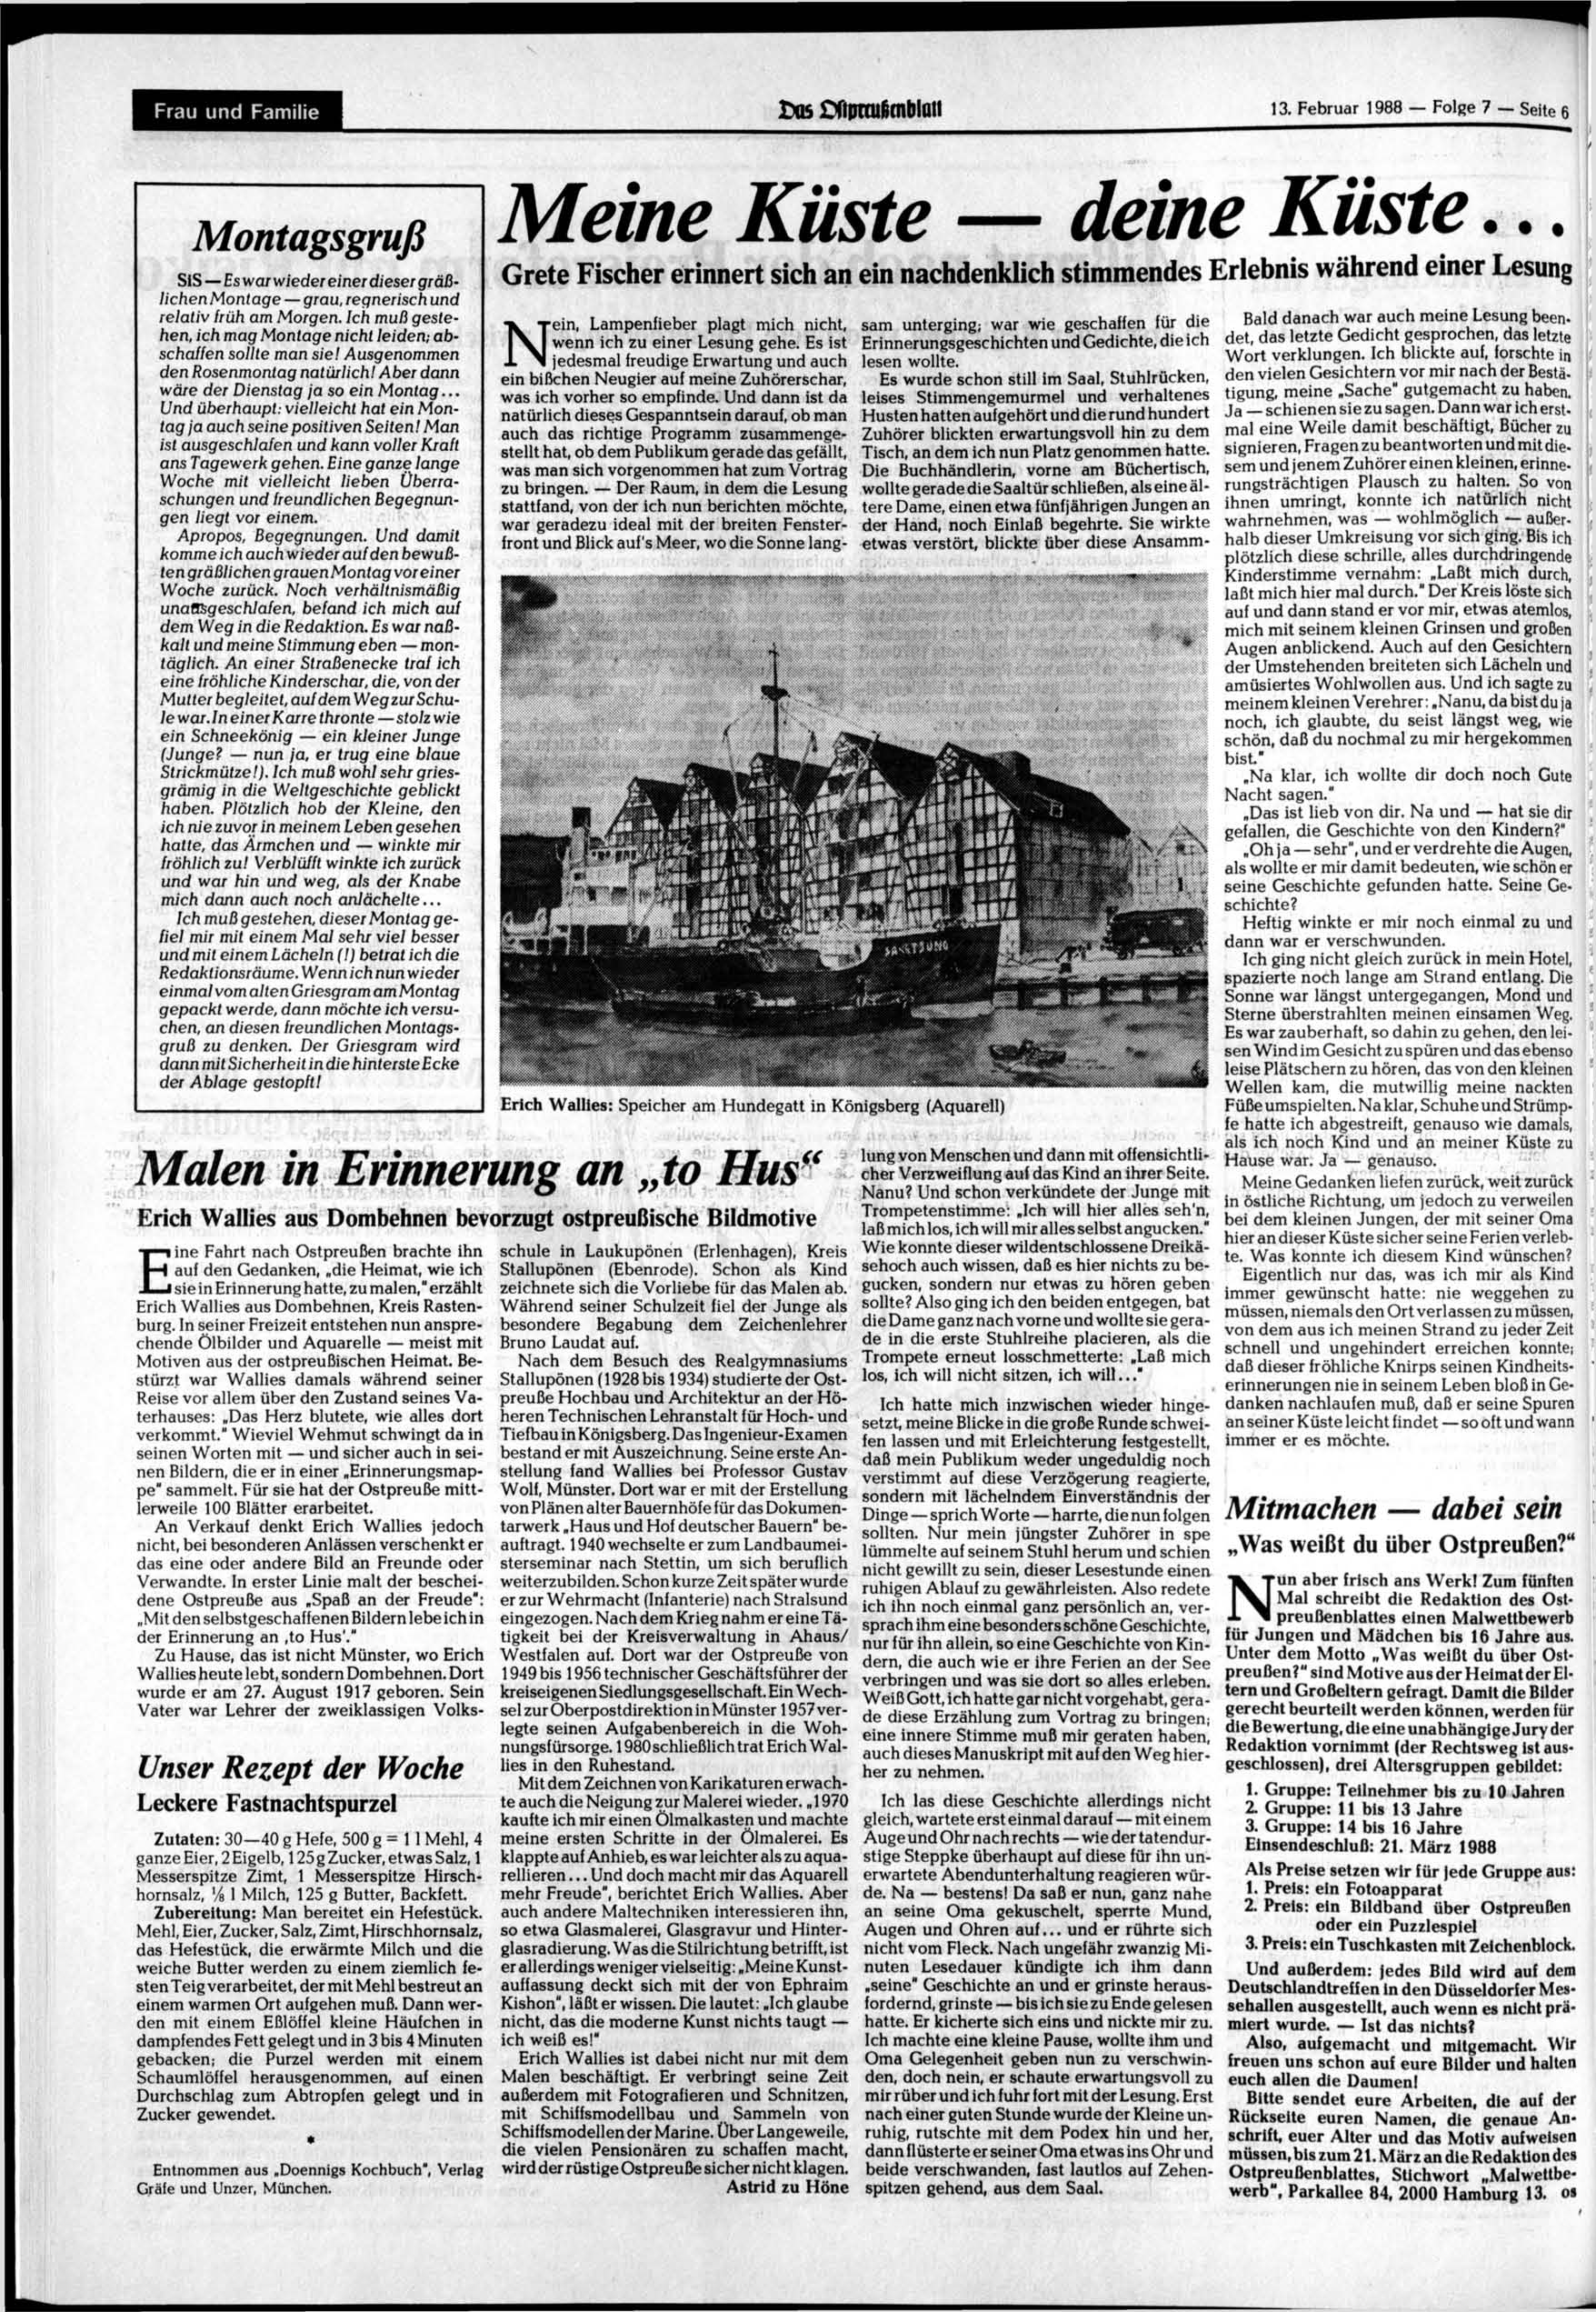 Frau und Familie os Ofmnufimblui 13. Februar 1988 Folge 7 Seite 6 Montagsgruß SiS Es war wieder einer dieser gräßlichen Montage grau, regnerisch und relativ früh am Morgen.